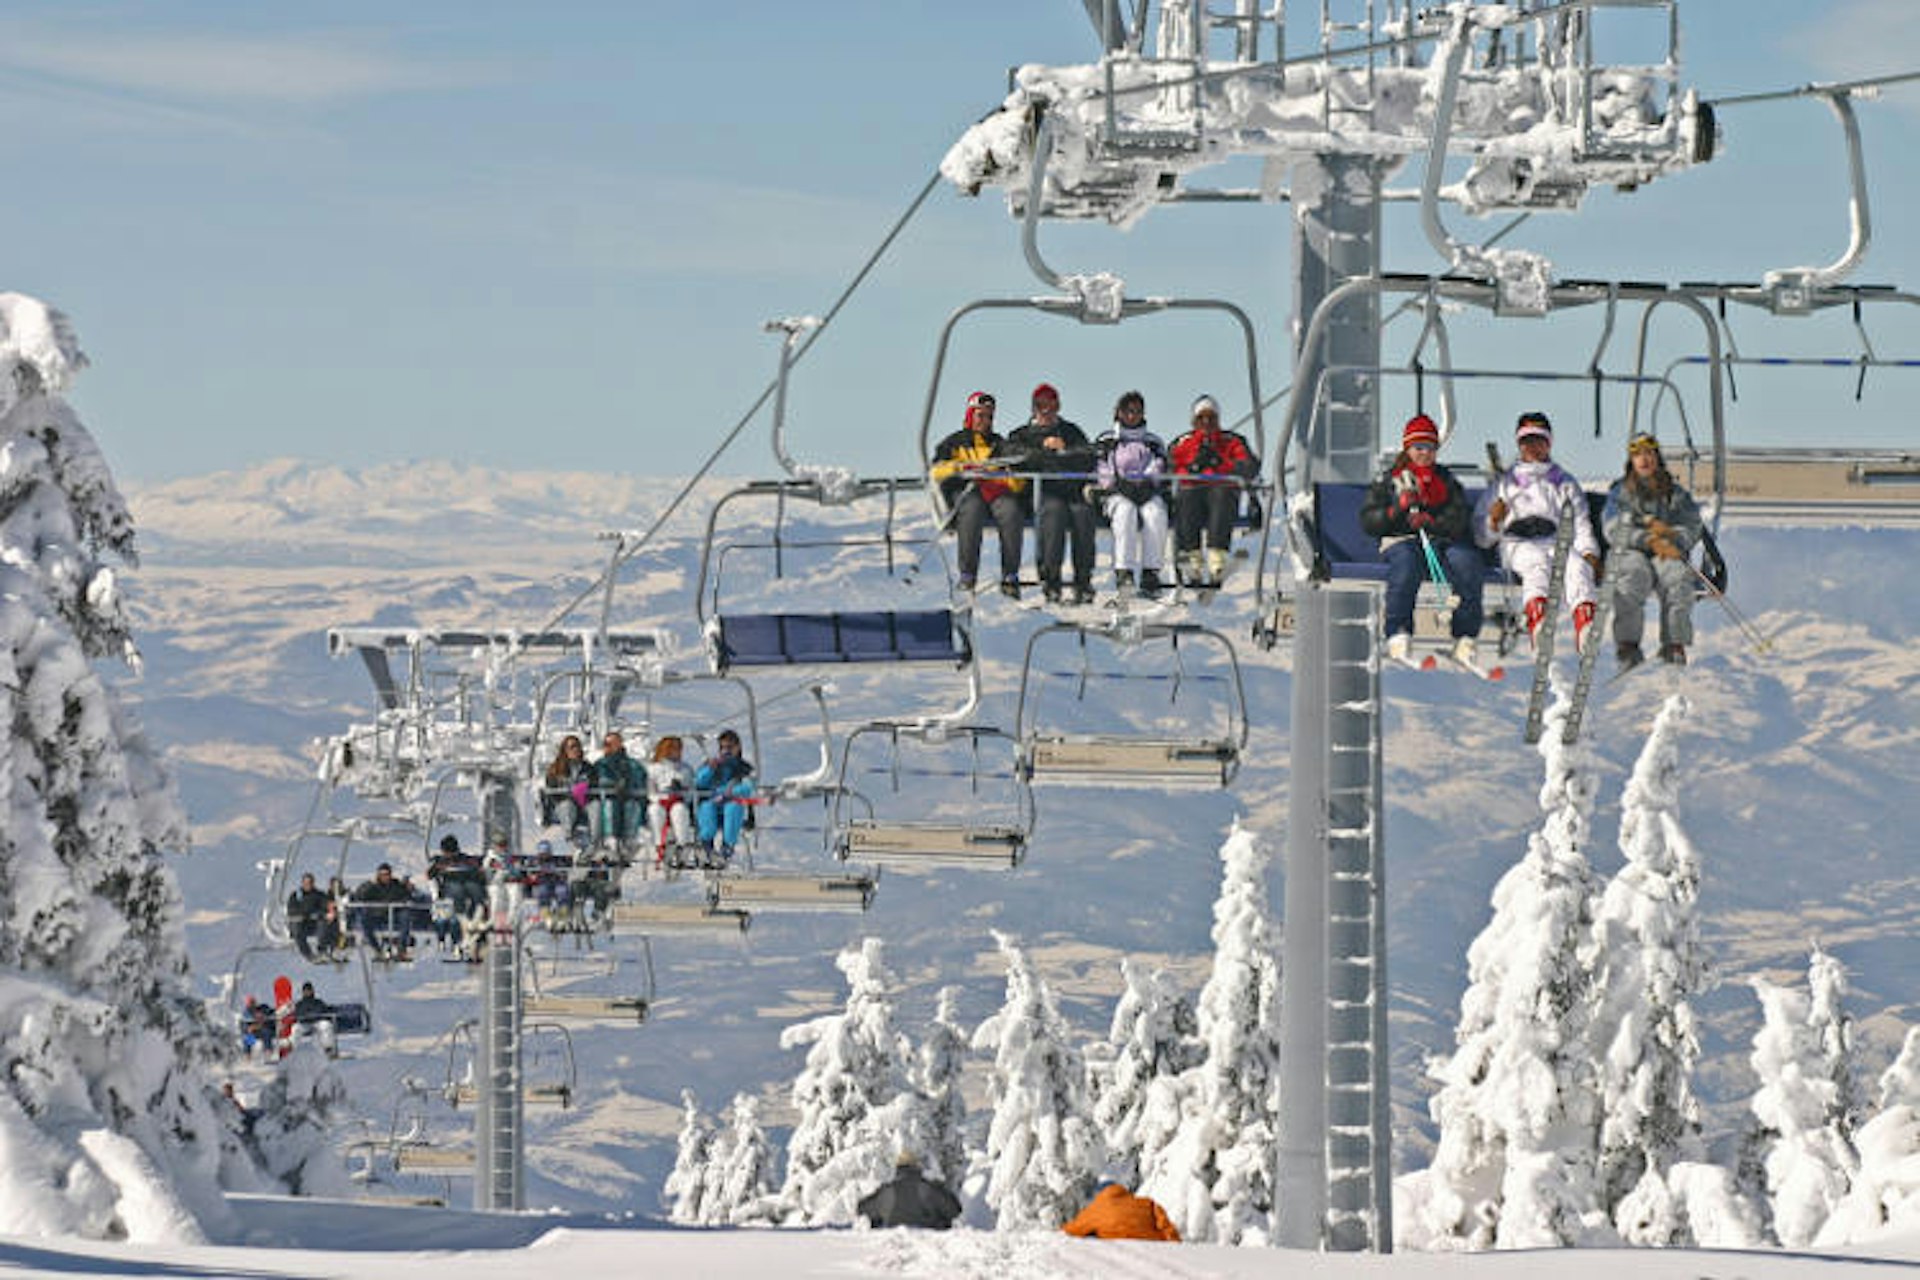 Kopaonik ski resort. Image by Dragan Bosnić / Courtesy of National Tourism Organisation of Serbia